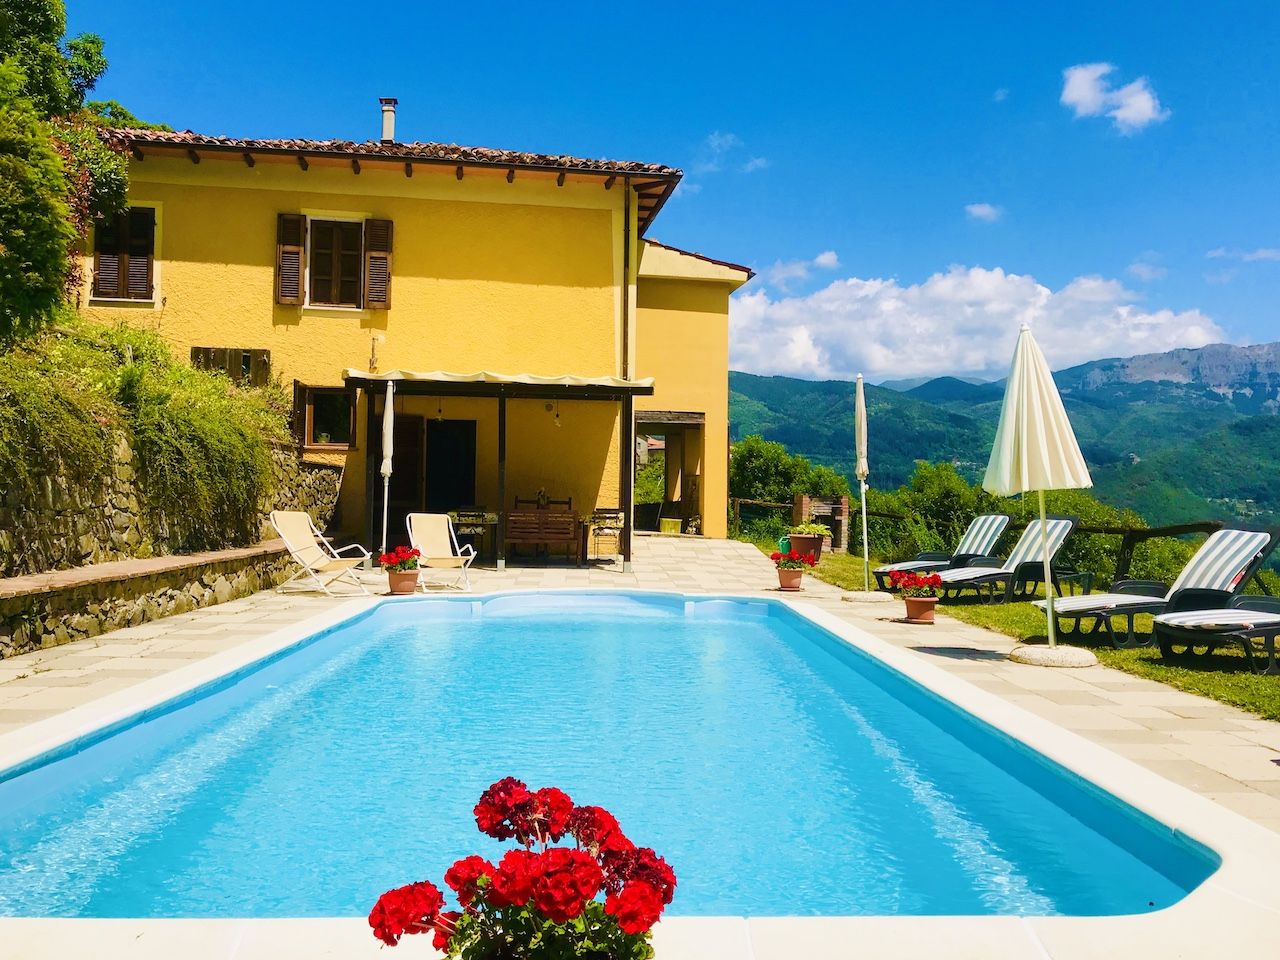 Italian villa in Tuscany